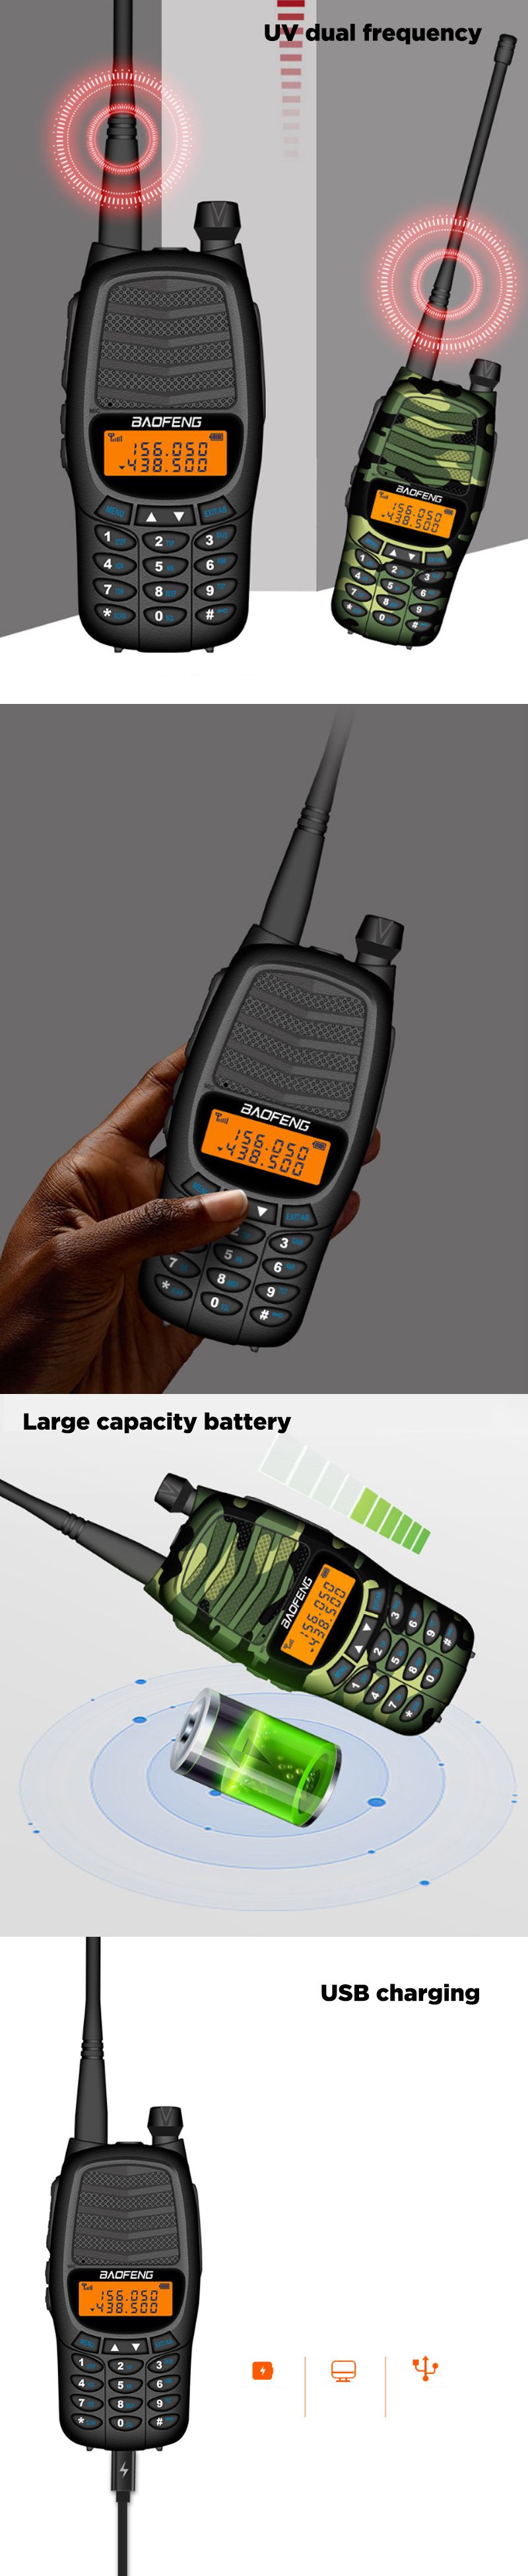 Baofeng-RS-UV800-8W-UV-Dual-Band-Handheld-Walkie-Talkie-USB-Charging-Flashlight-Military-Civilian-Ho-1598655